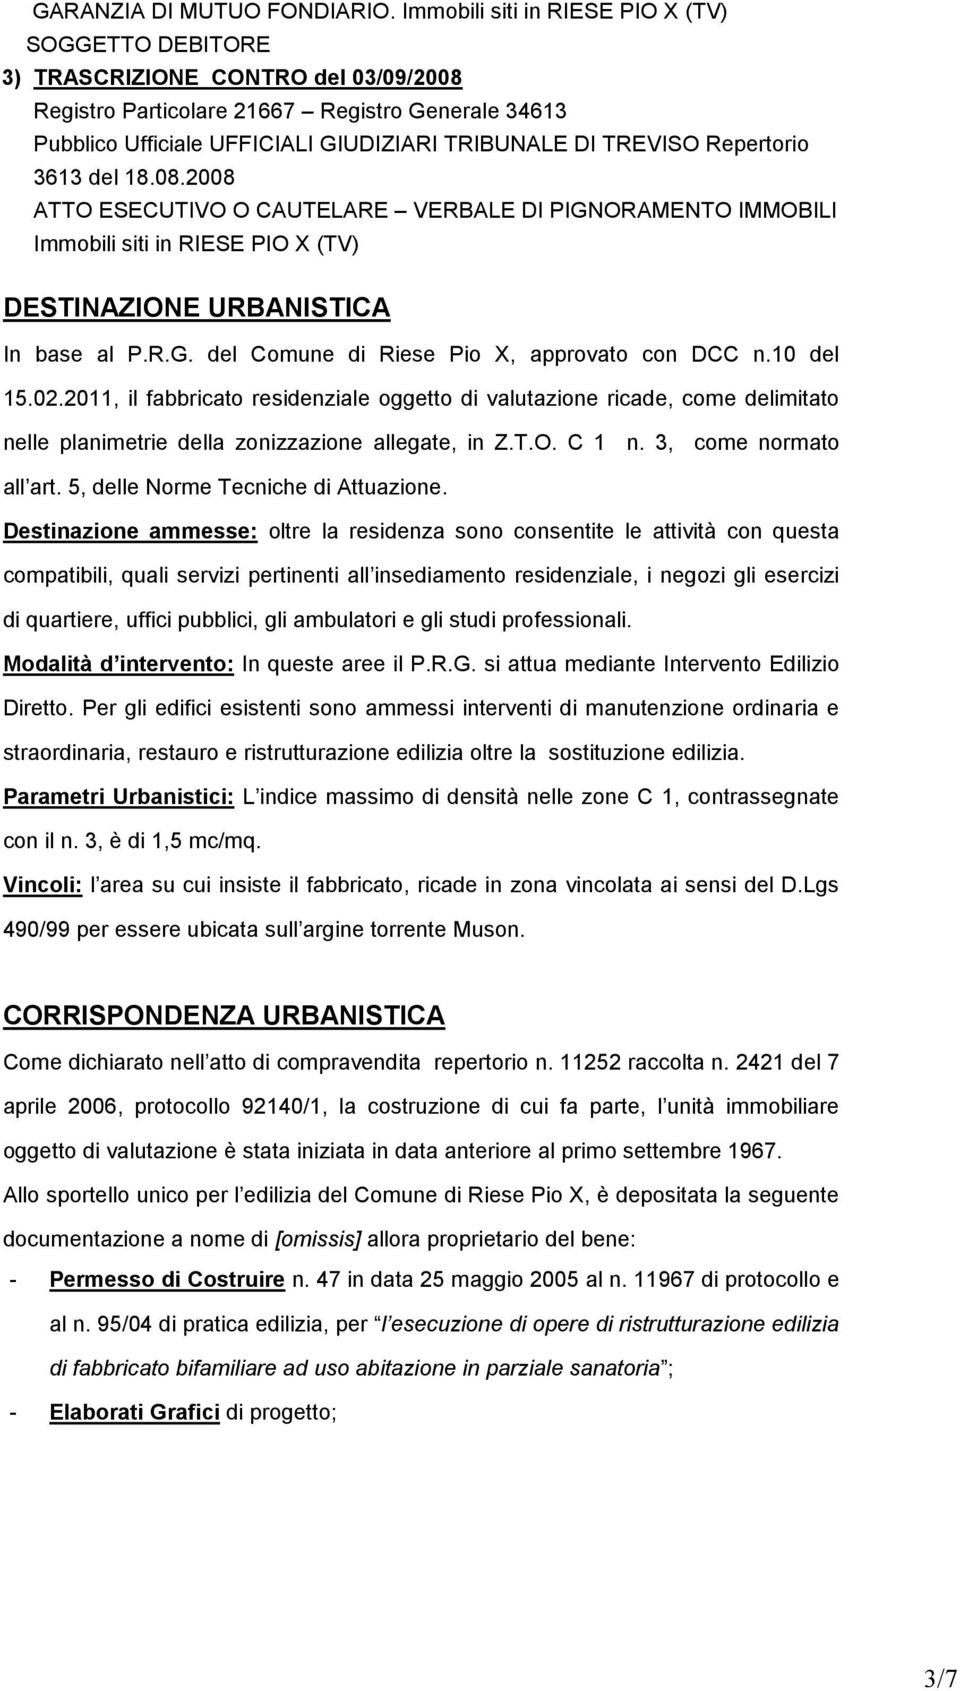 TREVISO Repertorio 3613 del 18.08.2008 ATTO ESECUTIVO O CAUTELARE VERBALE DI PIGNORAMENTO IMMOBILI Immobili siti in RIESE PIO X (TV) DESTINAZIONE URBANISTICA In base al P.R.G. del Comune di Riese Pio X, approvato con DCC n.